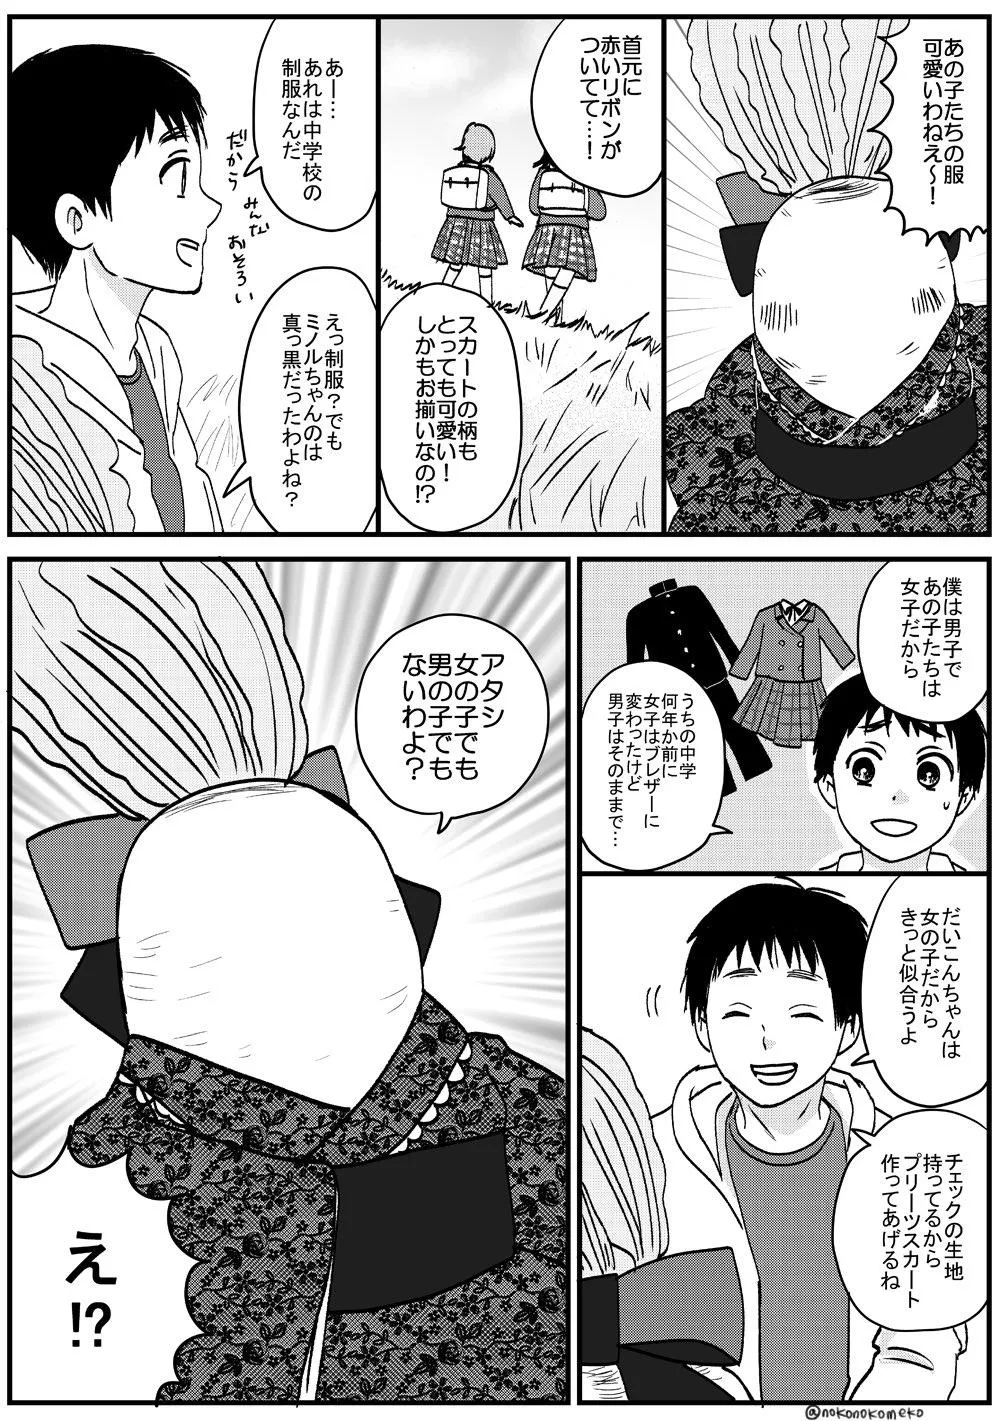 『喋る大根と少年が出会ってツイッターデビューする漫画』8